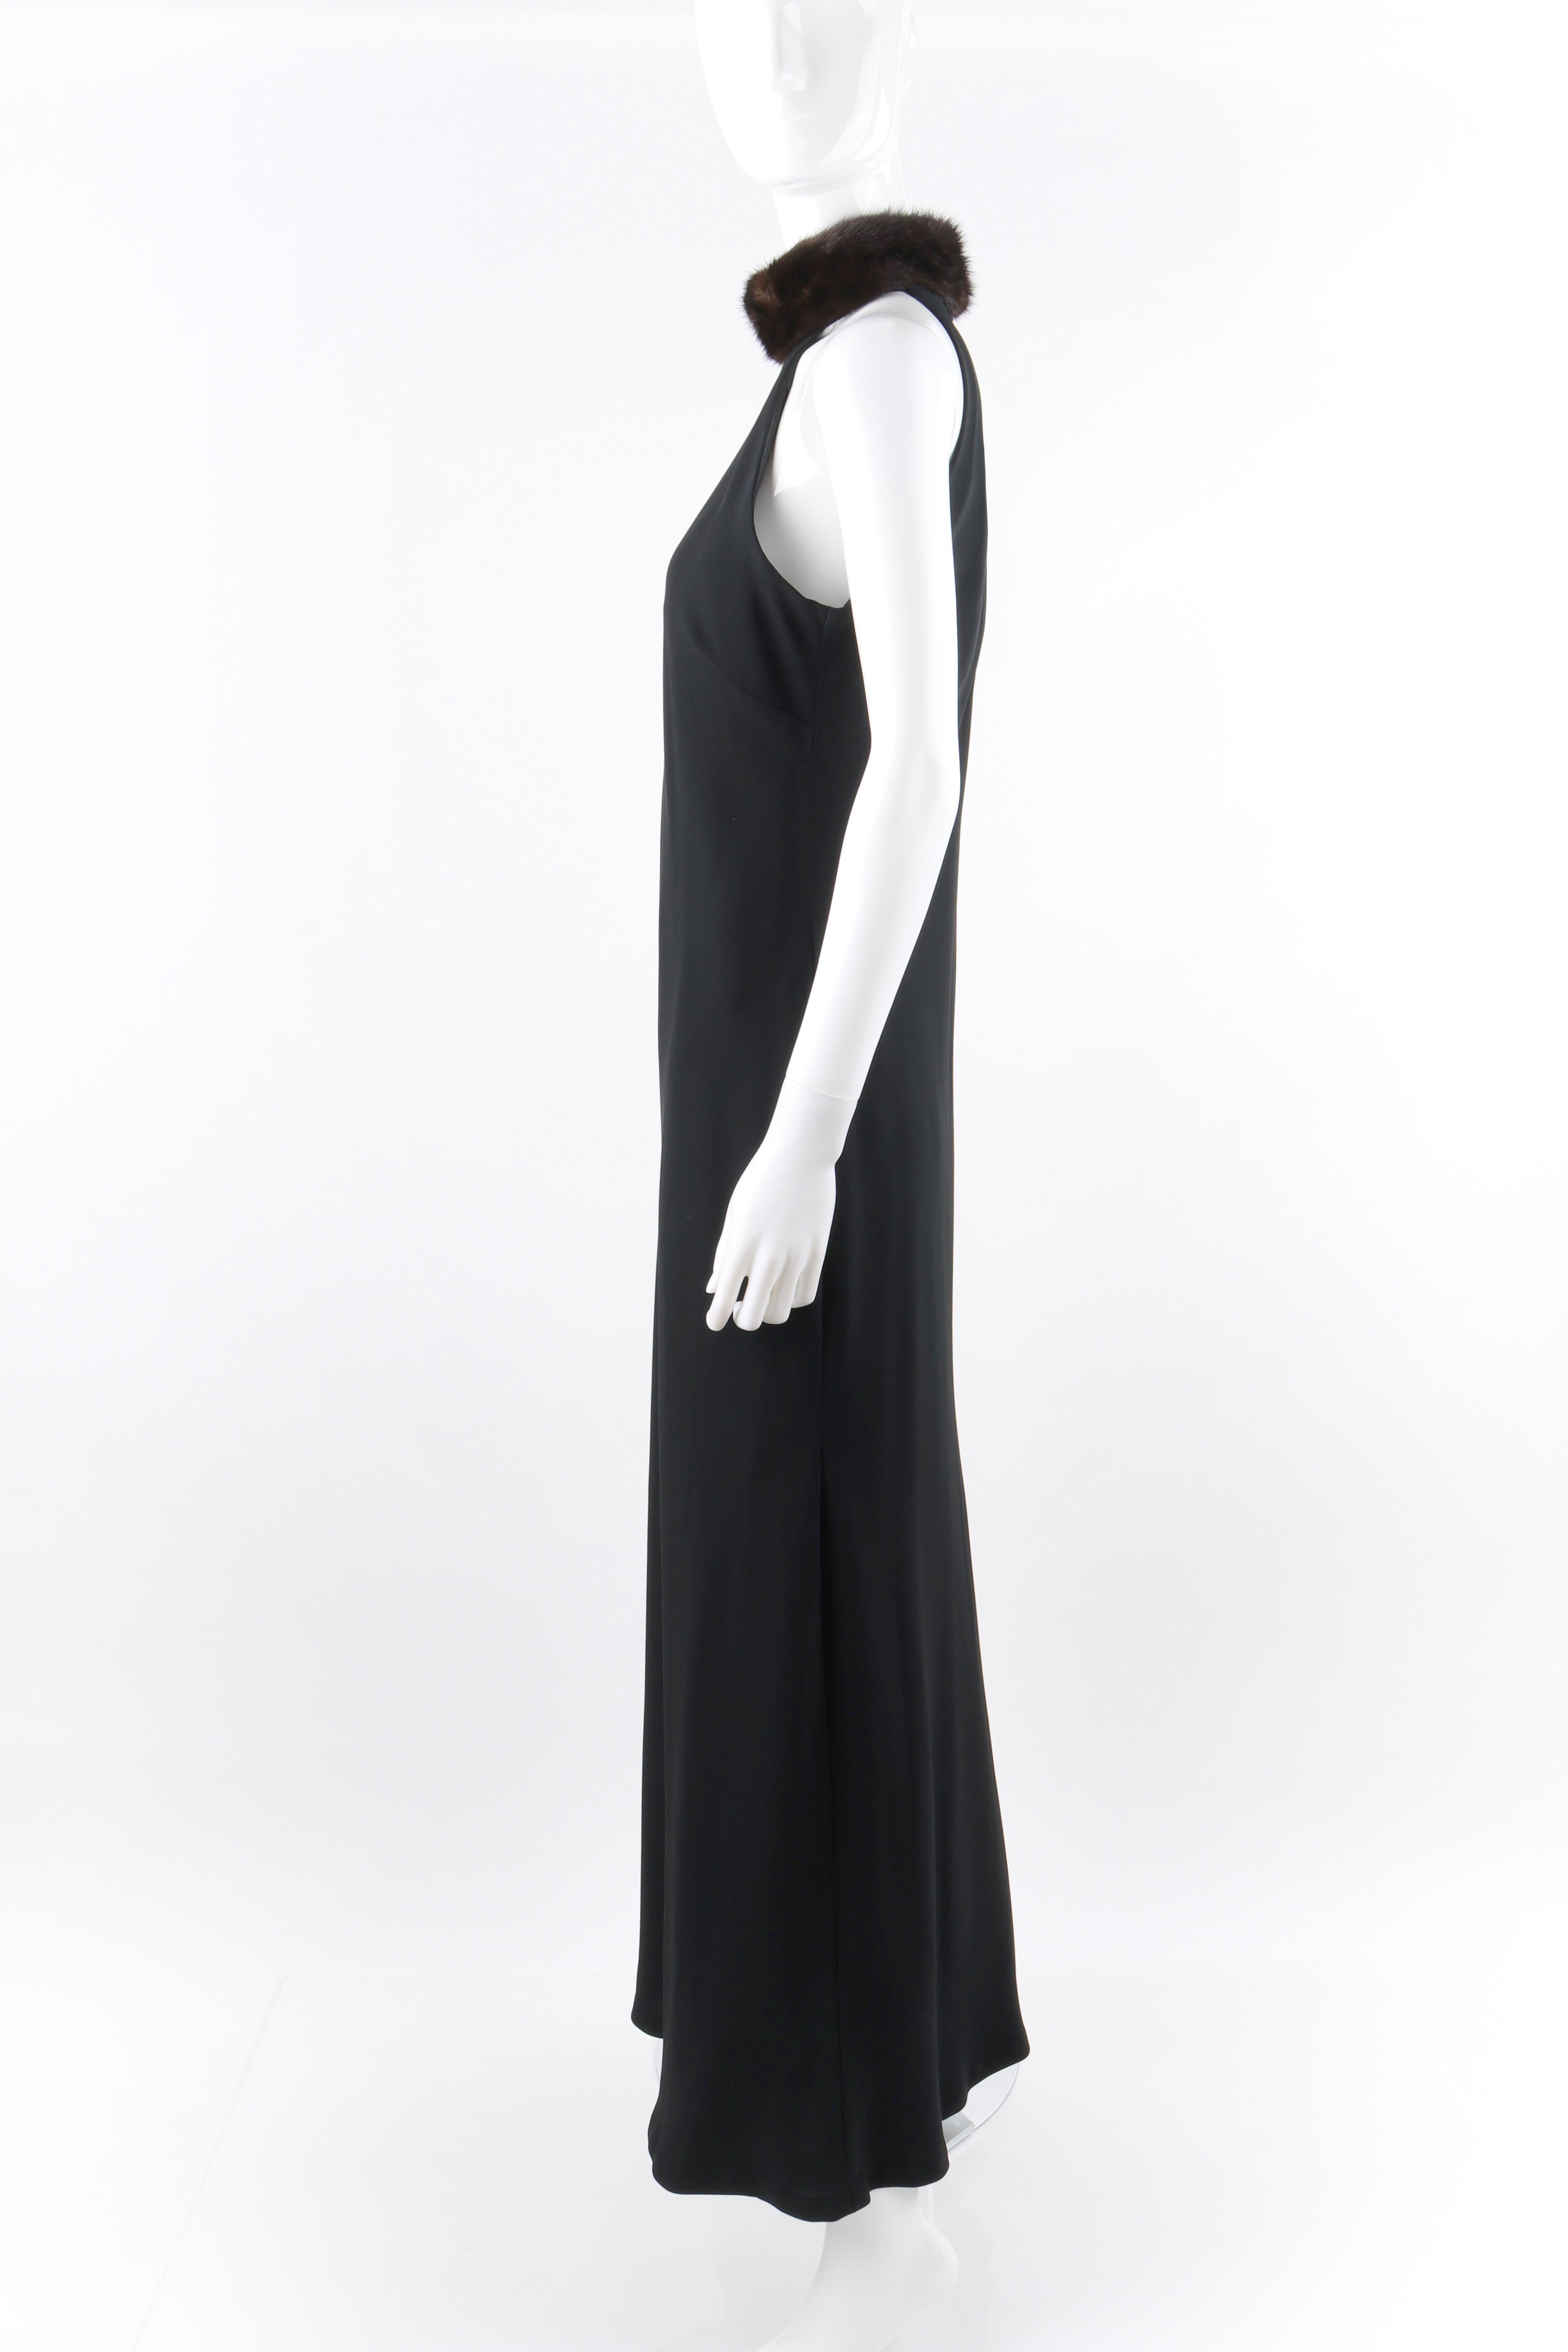 Women's RALPH LAUREN Lauren Collection Black Mink Fur Collar Halter Evening Dress Gown